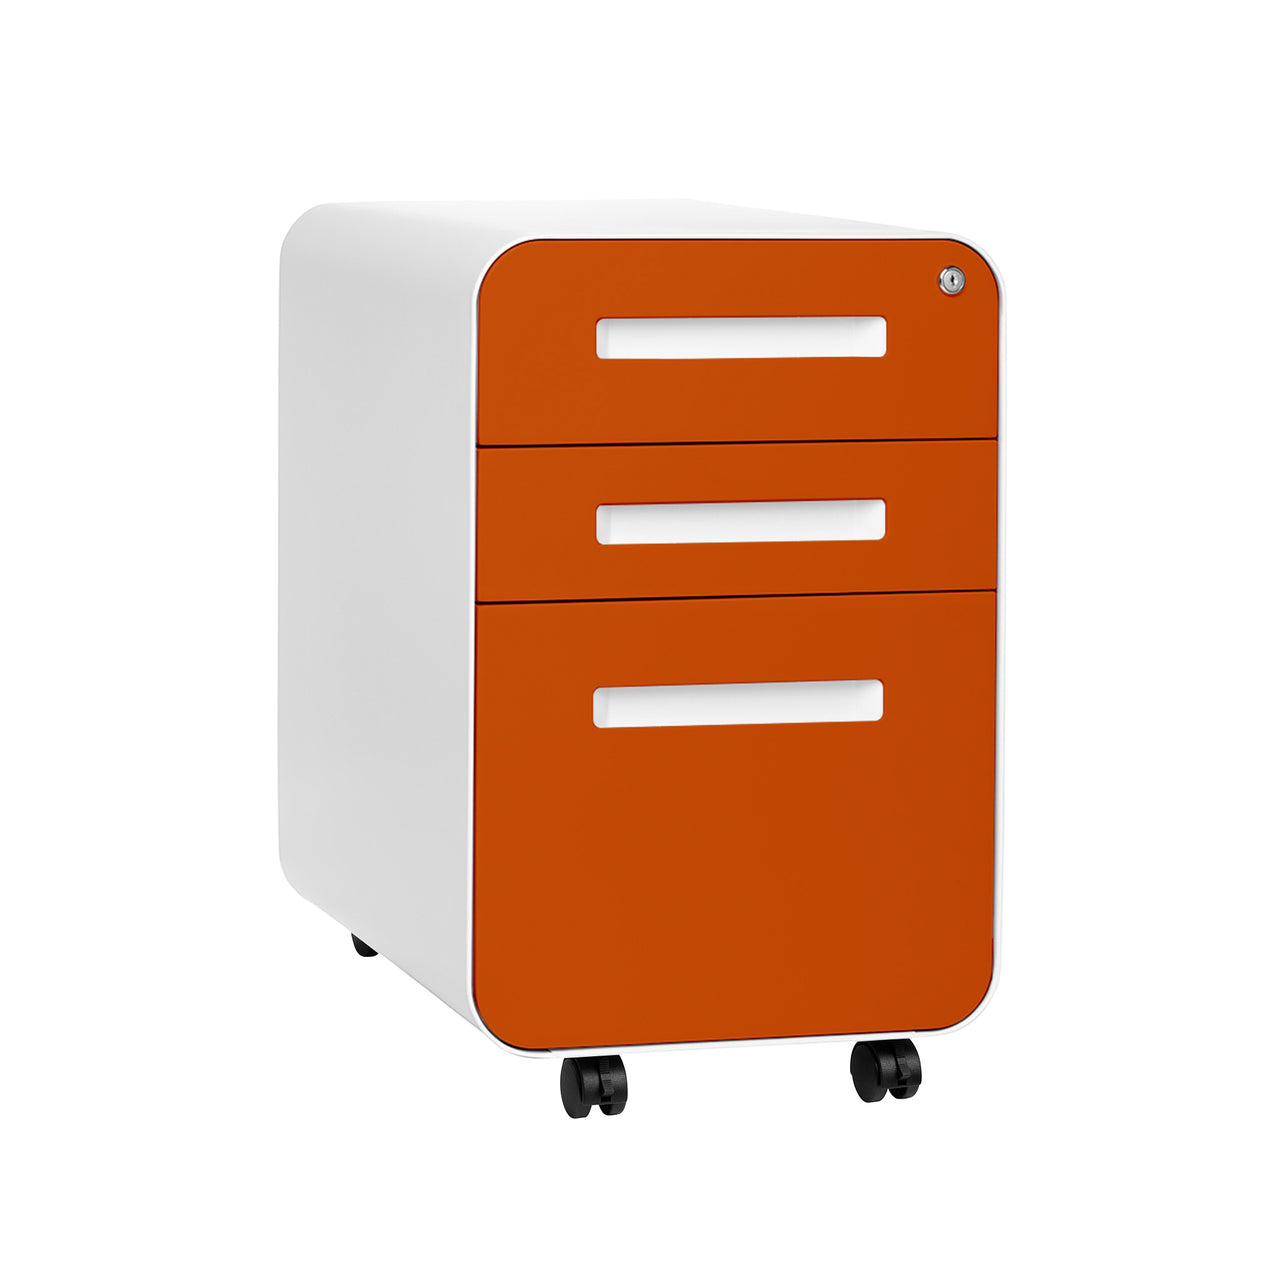 Stockpile Curve File Cabinet (Orange Faceplate)